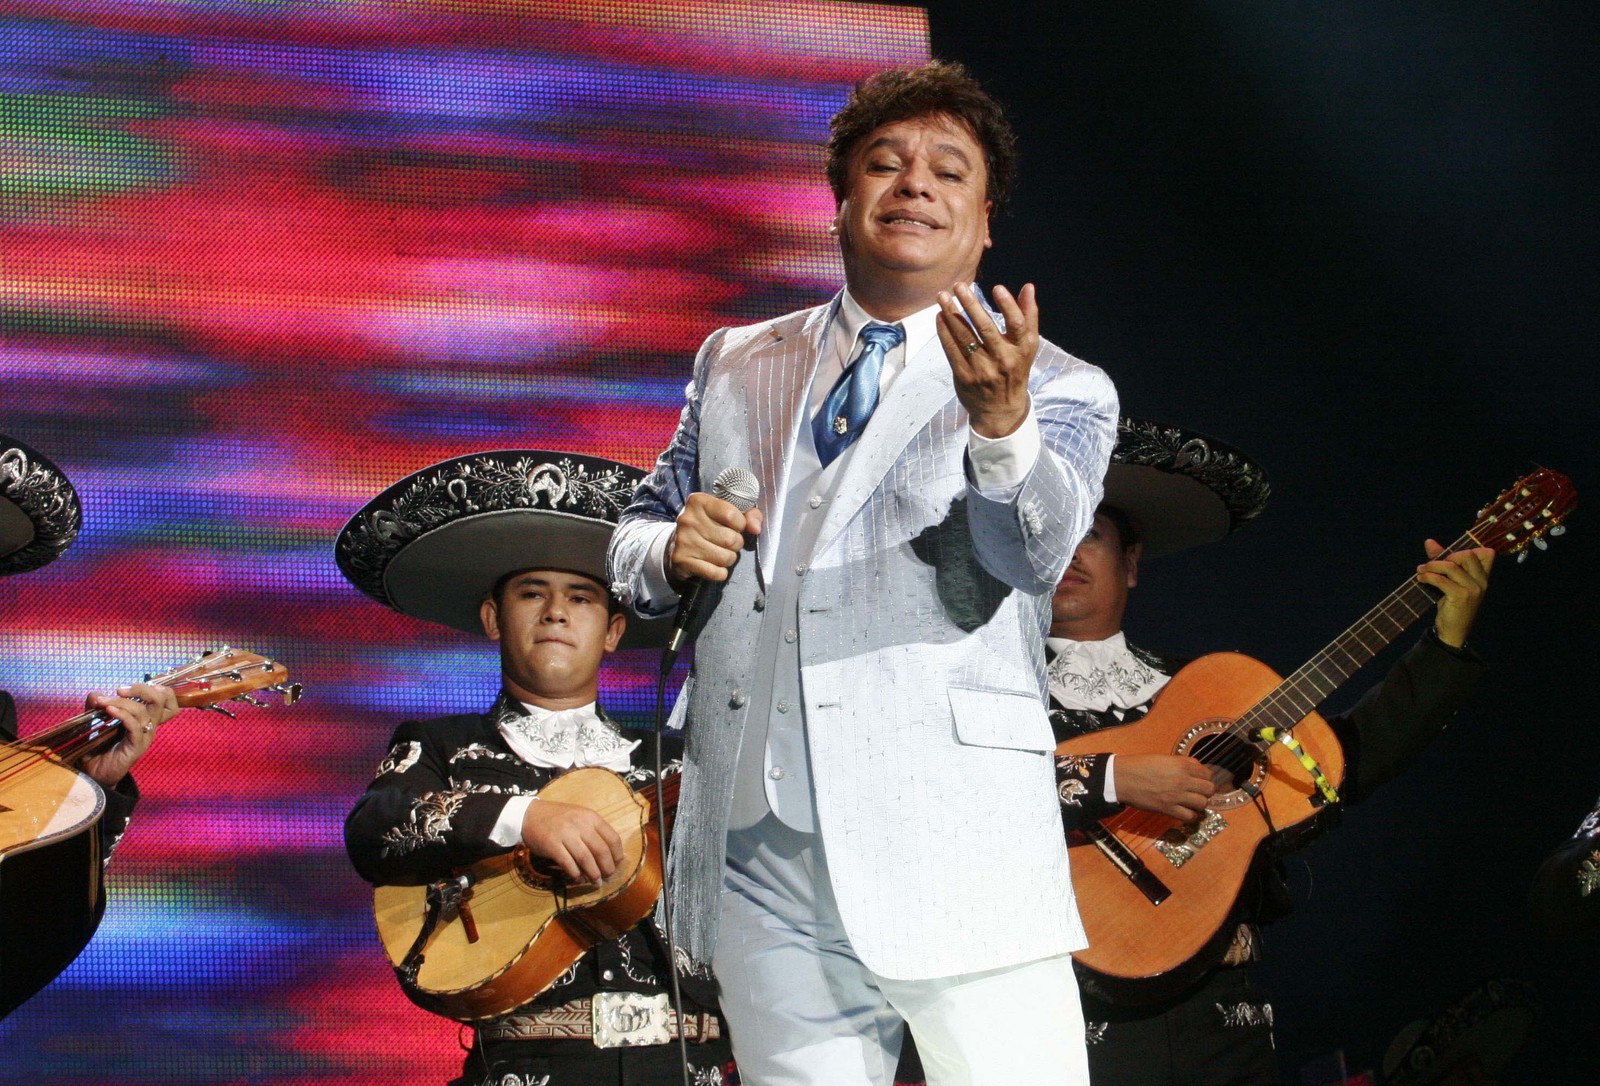 Vigente. Los seguidores del cantante mexicano siguen extrañándolo, por eso creen que los mensajes son una falta de respeto.